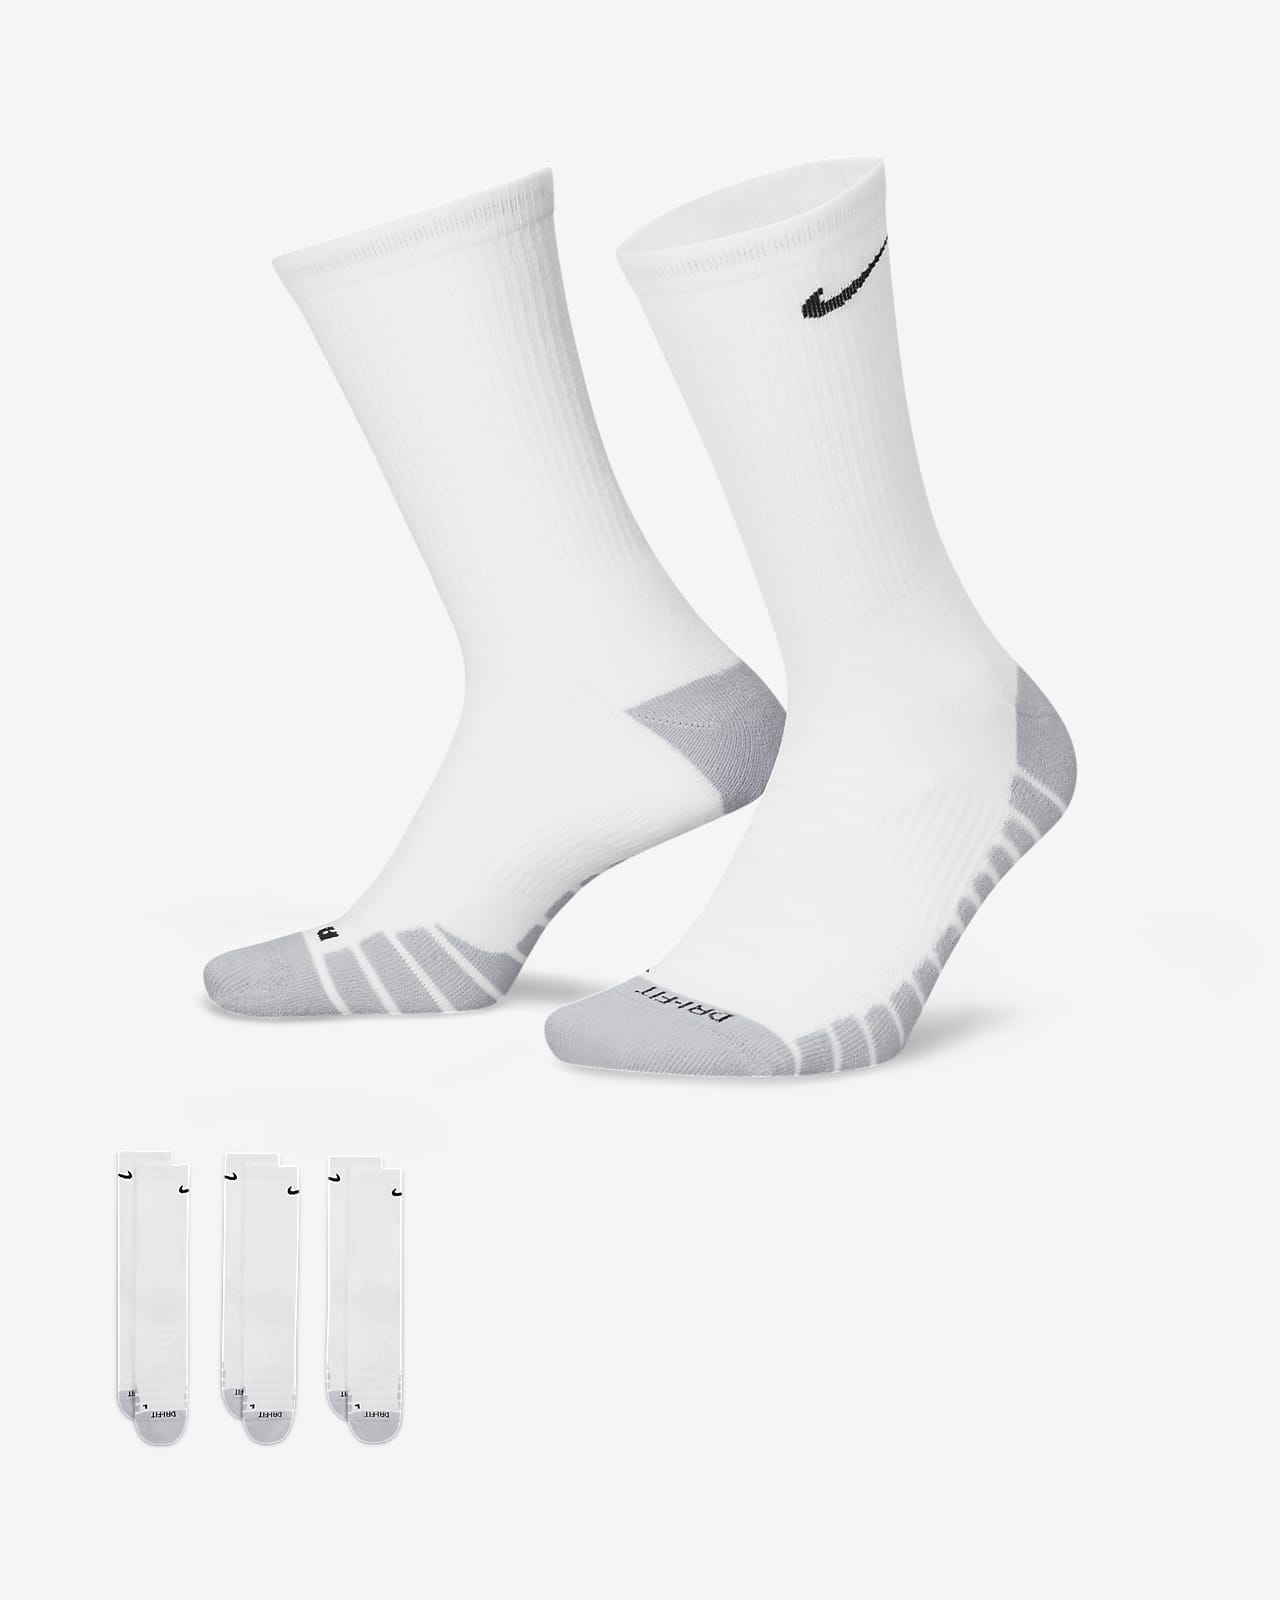 Středně vysoké polstrované tréninkové ponožky Nike Everyday Max (3 páry)